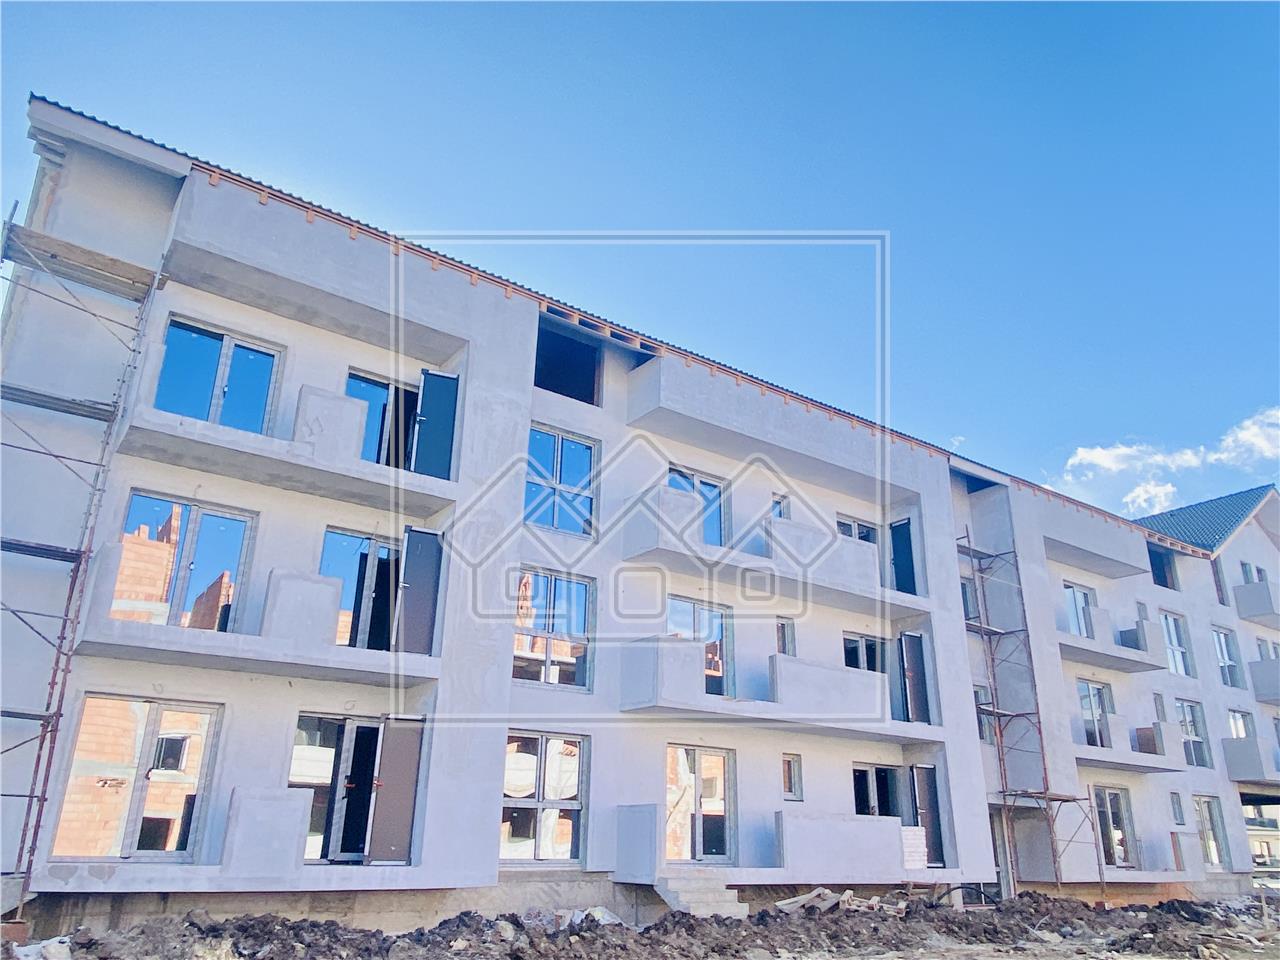 Apartament de vanzare in Sibiu - decomandat - balcon si magazie